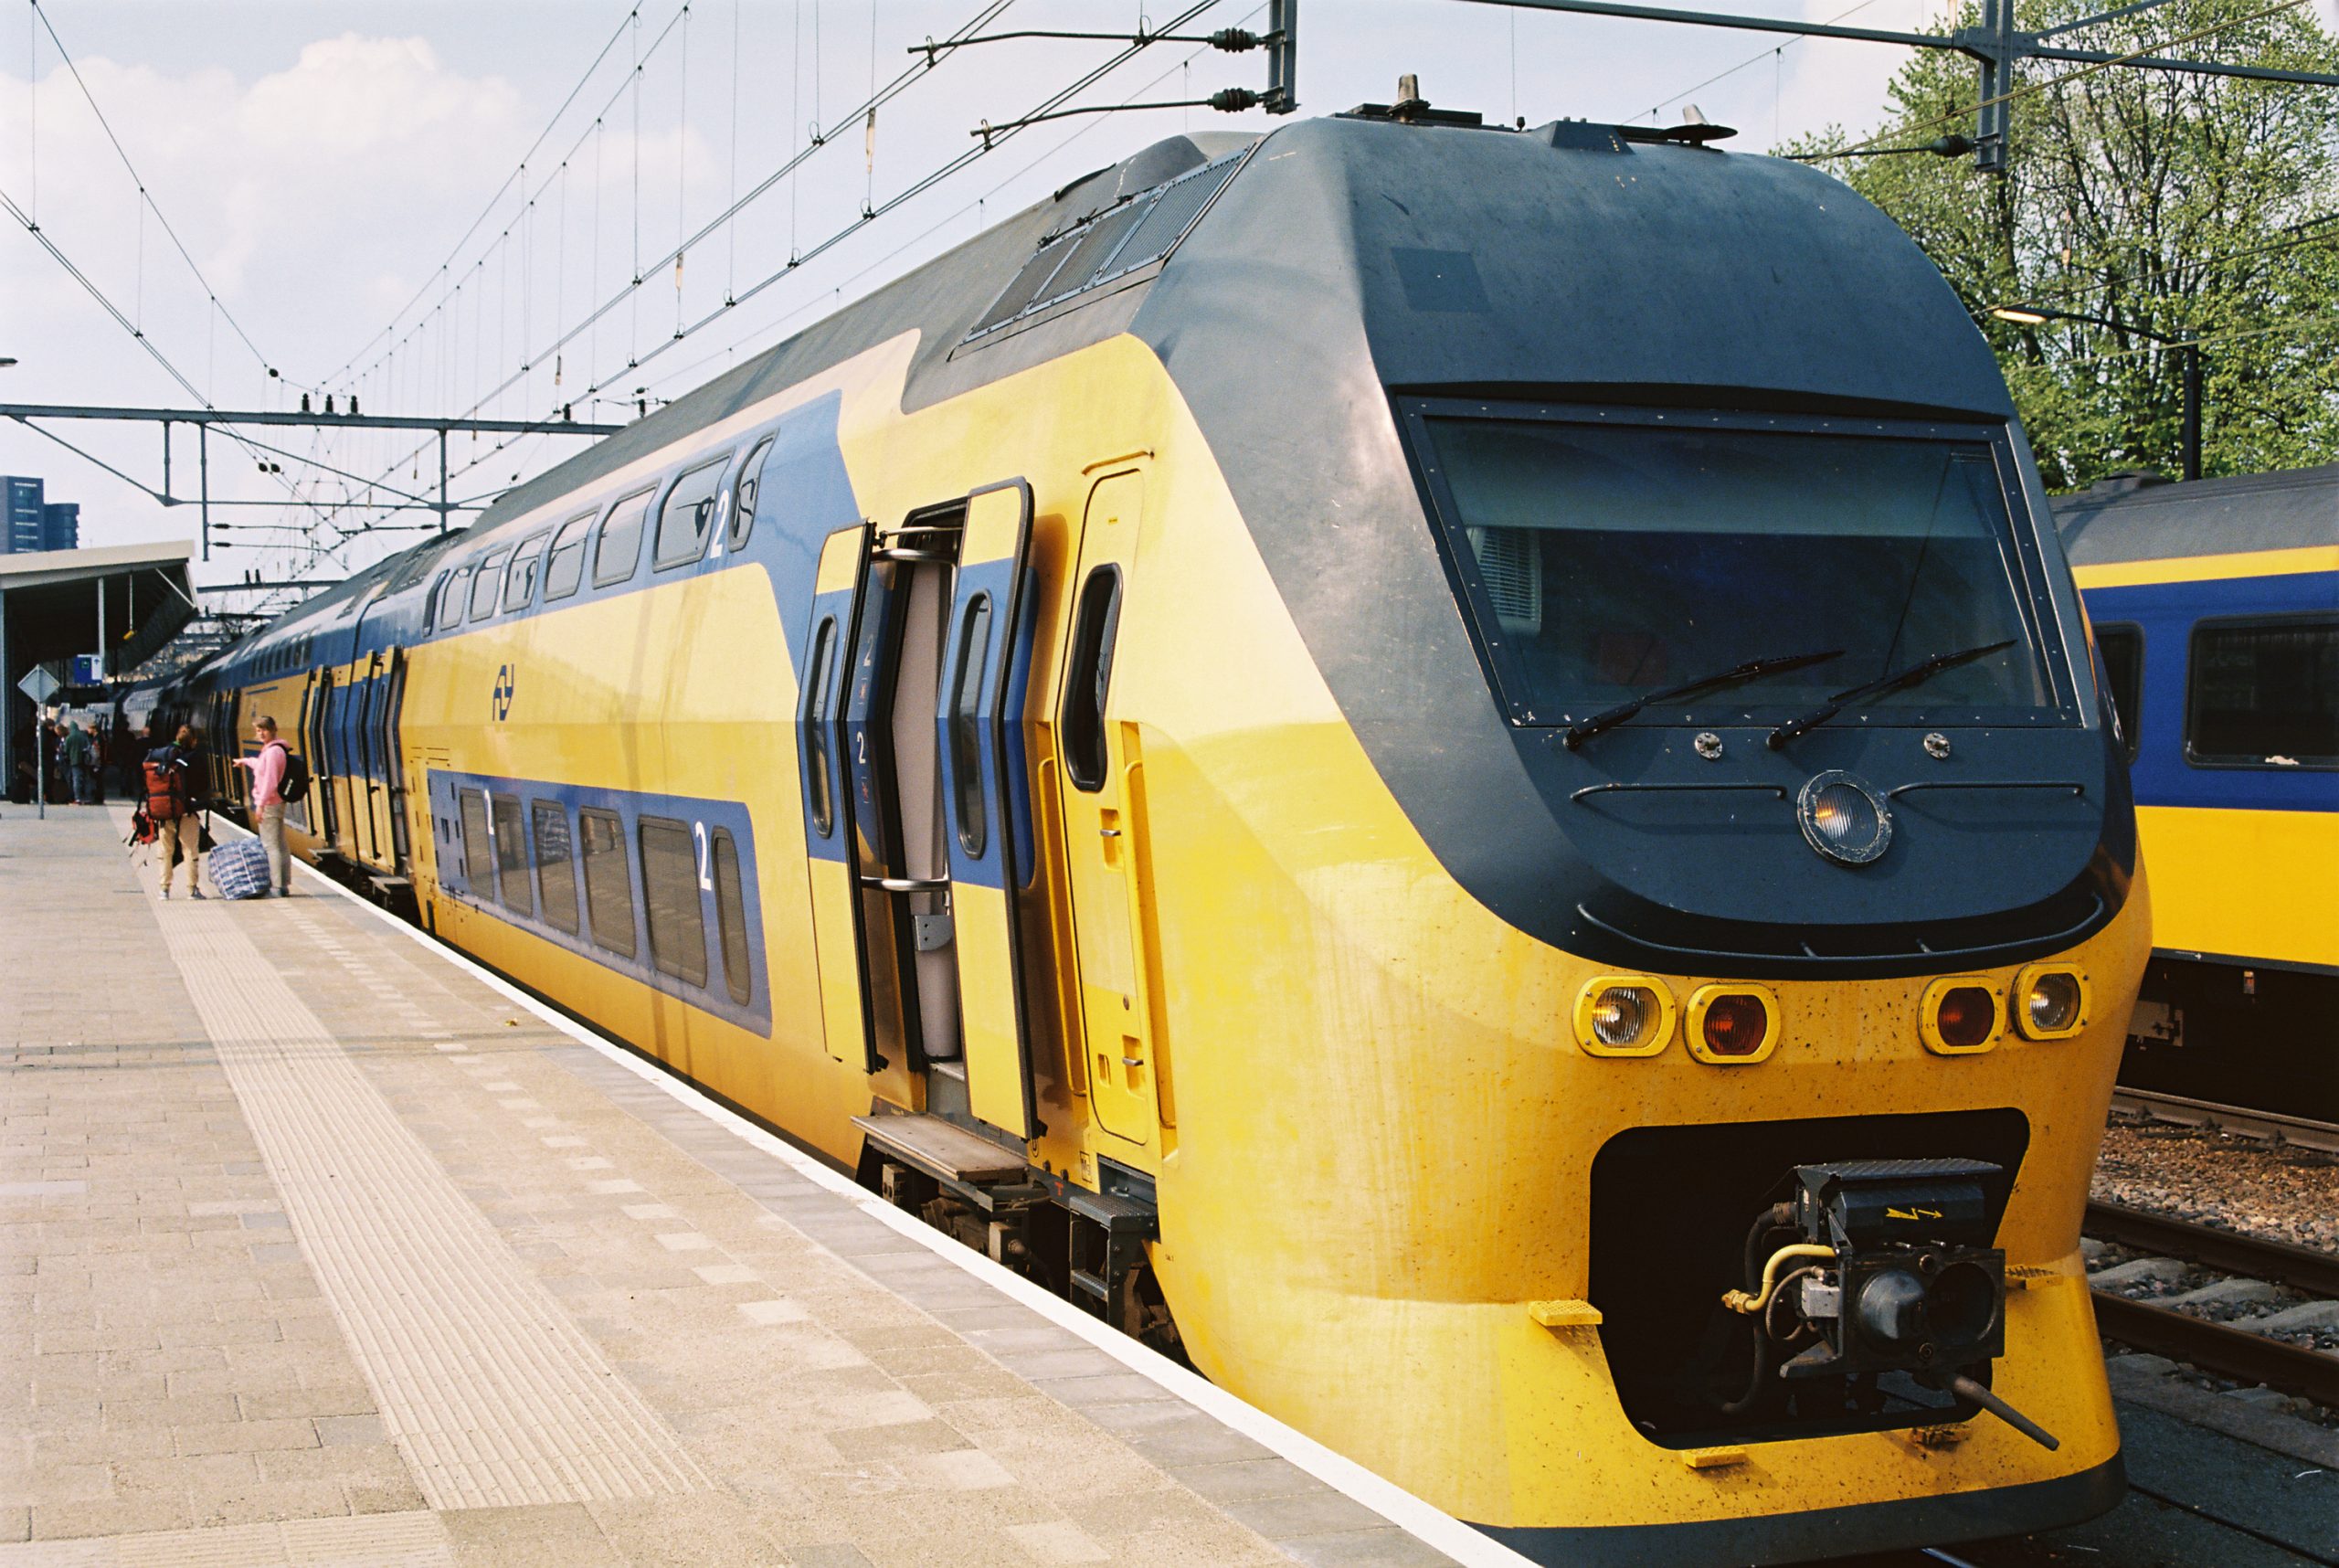 NS tekent contract met PZEM en Shell voor levering elektriciteit
treinen